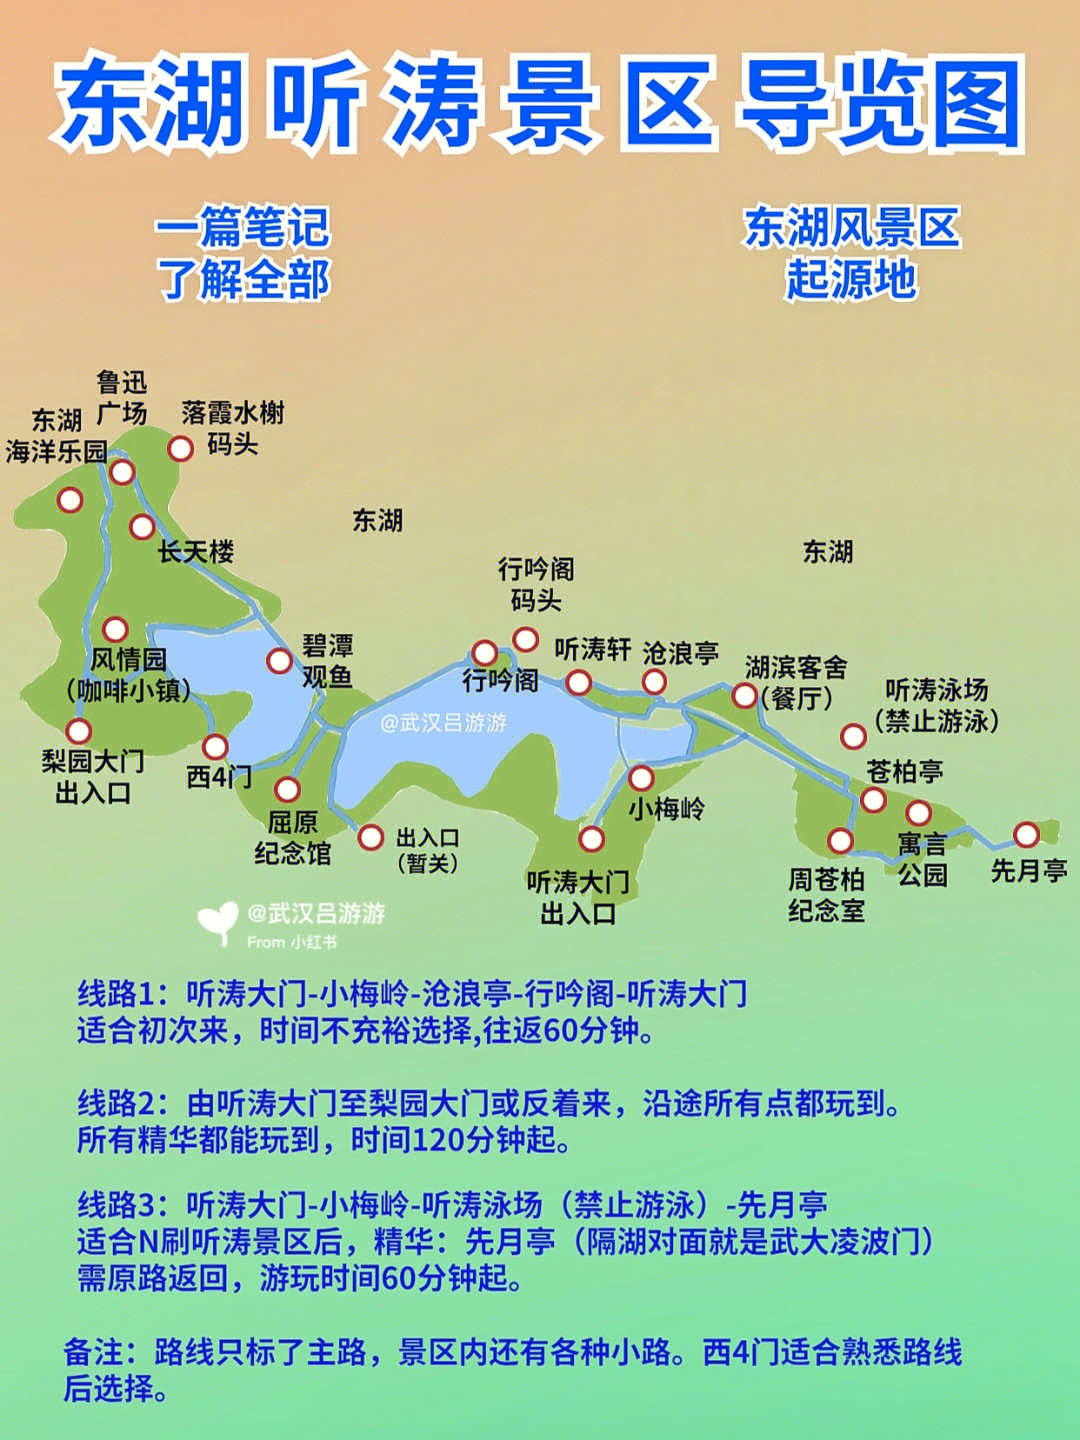 武汉东湖听涛景区游玩攻略,图文干货满满7515